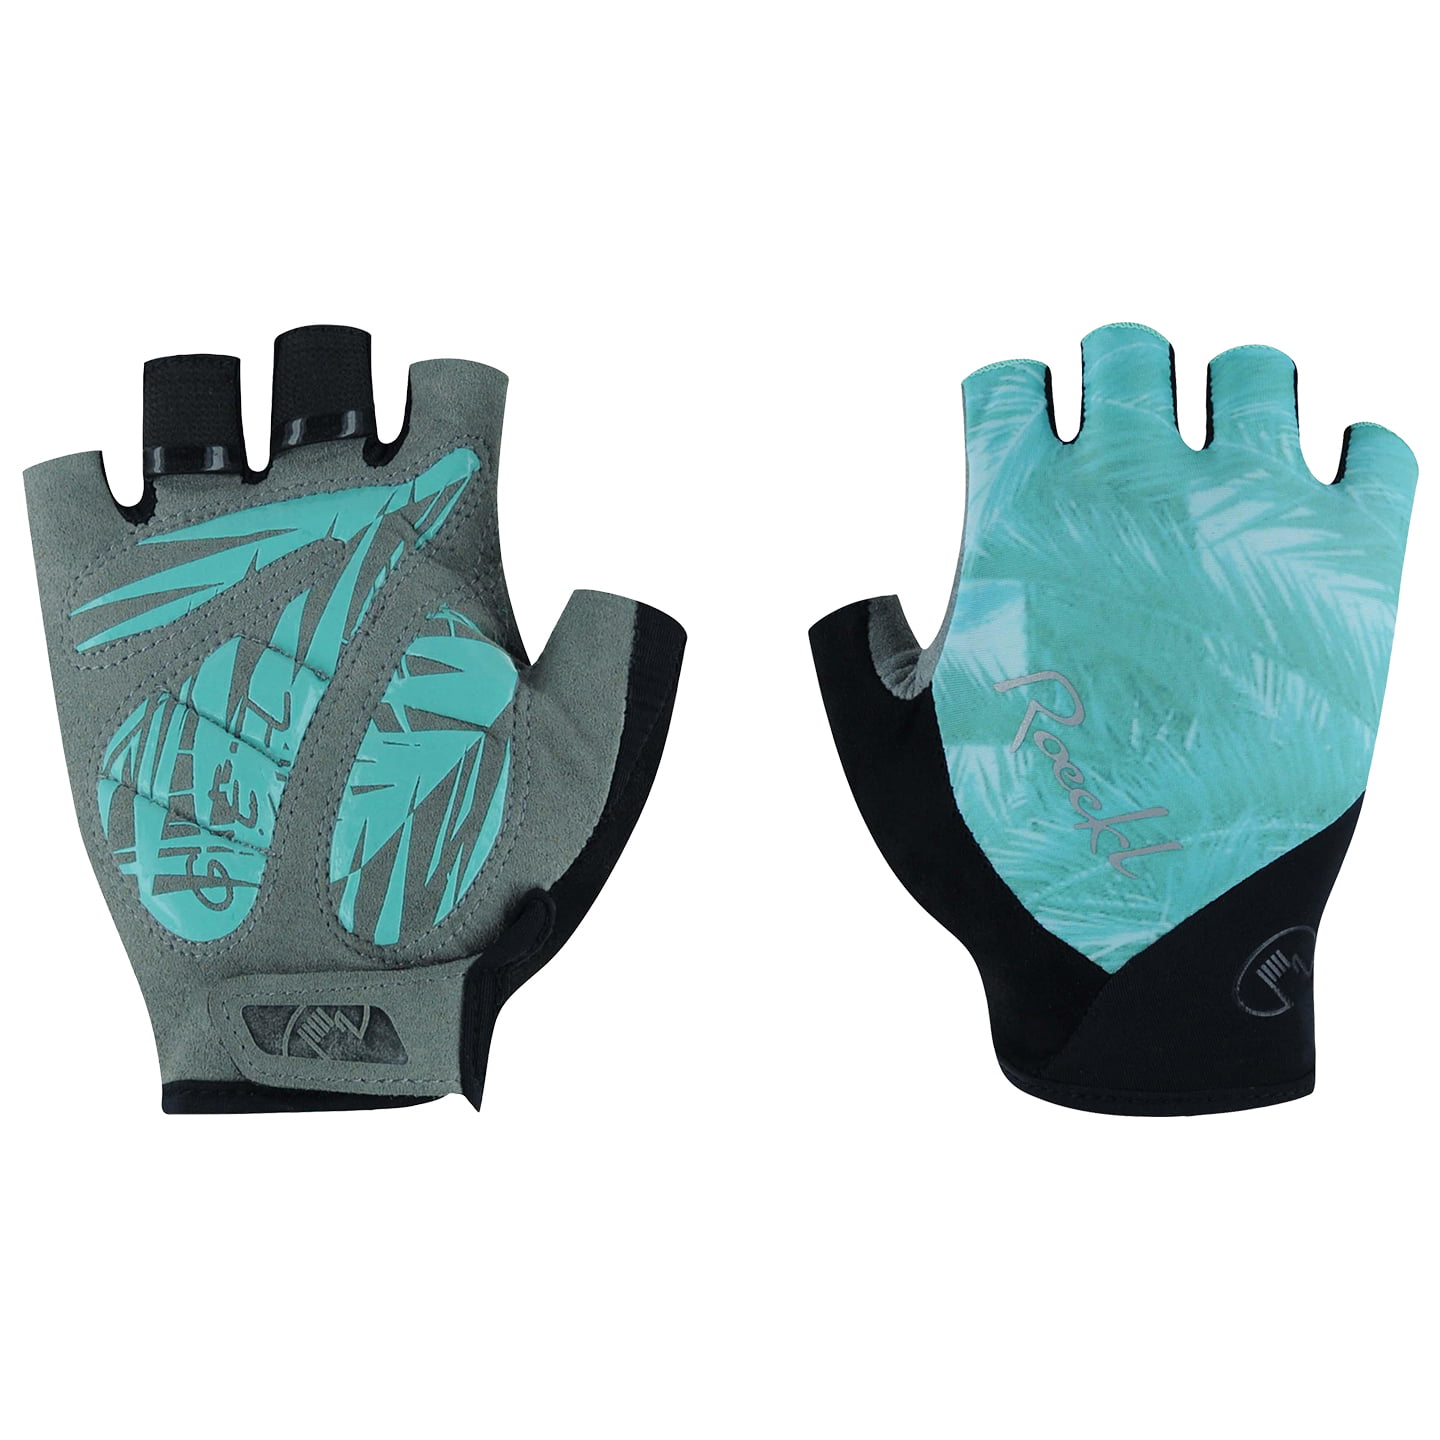 ROECKL Danis Women’s Gloves Women’s Cycling Gloves, size 6,5, Cycling gloves, Cycling clothing